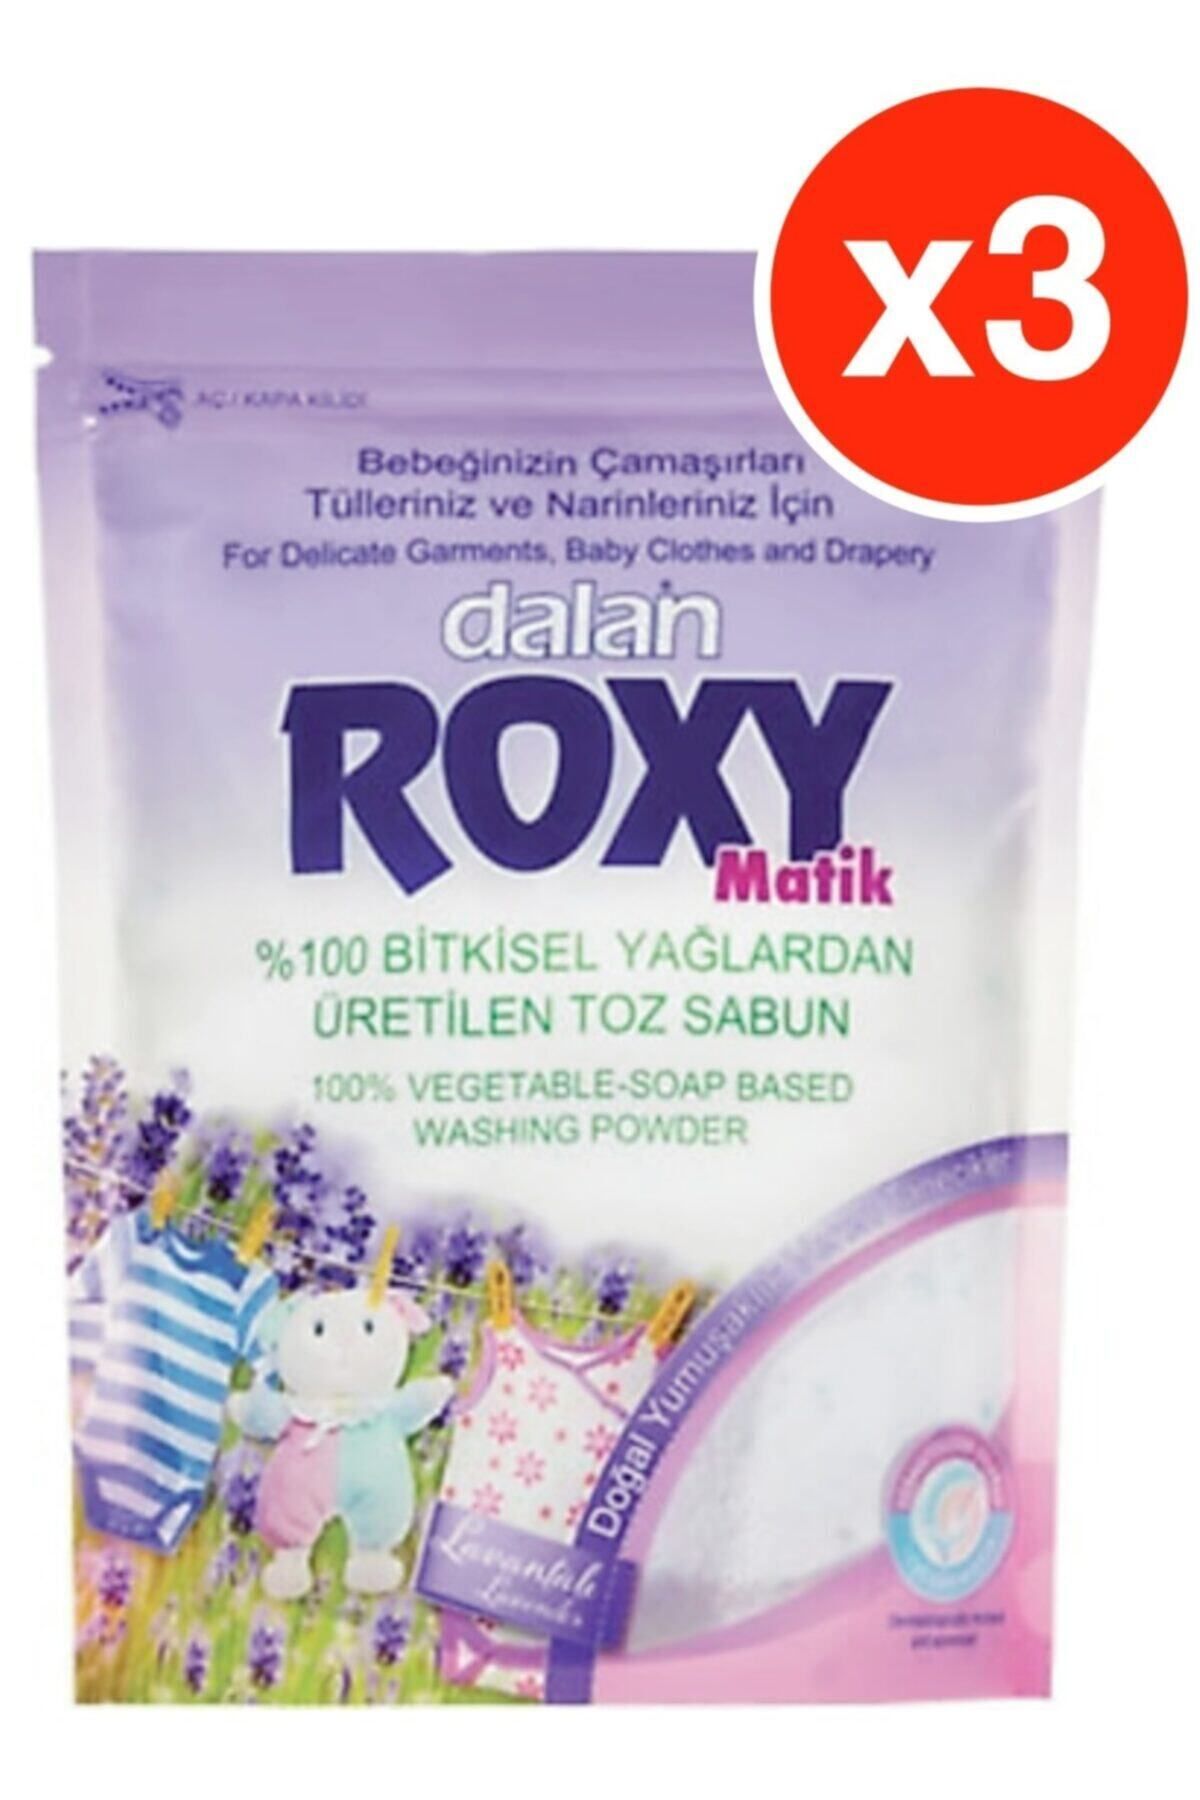 Dalan Roxy Matik Lavanta Kokulu Toz Sabun Bebek Deterjanı 800 Gr X 3 Adet